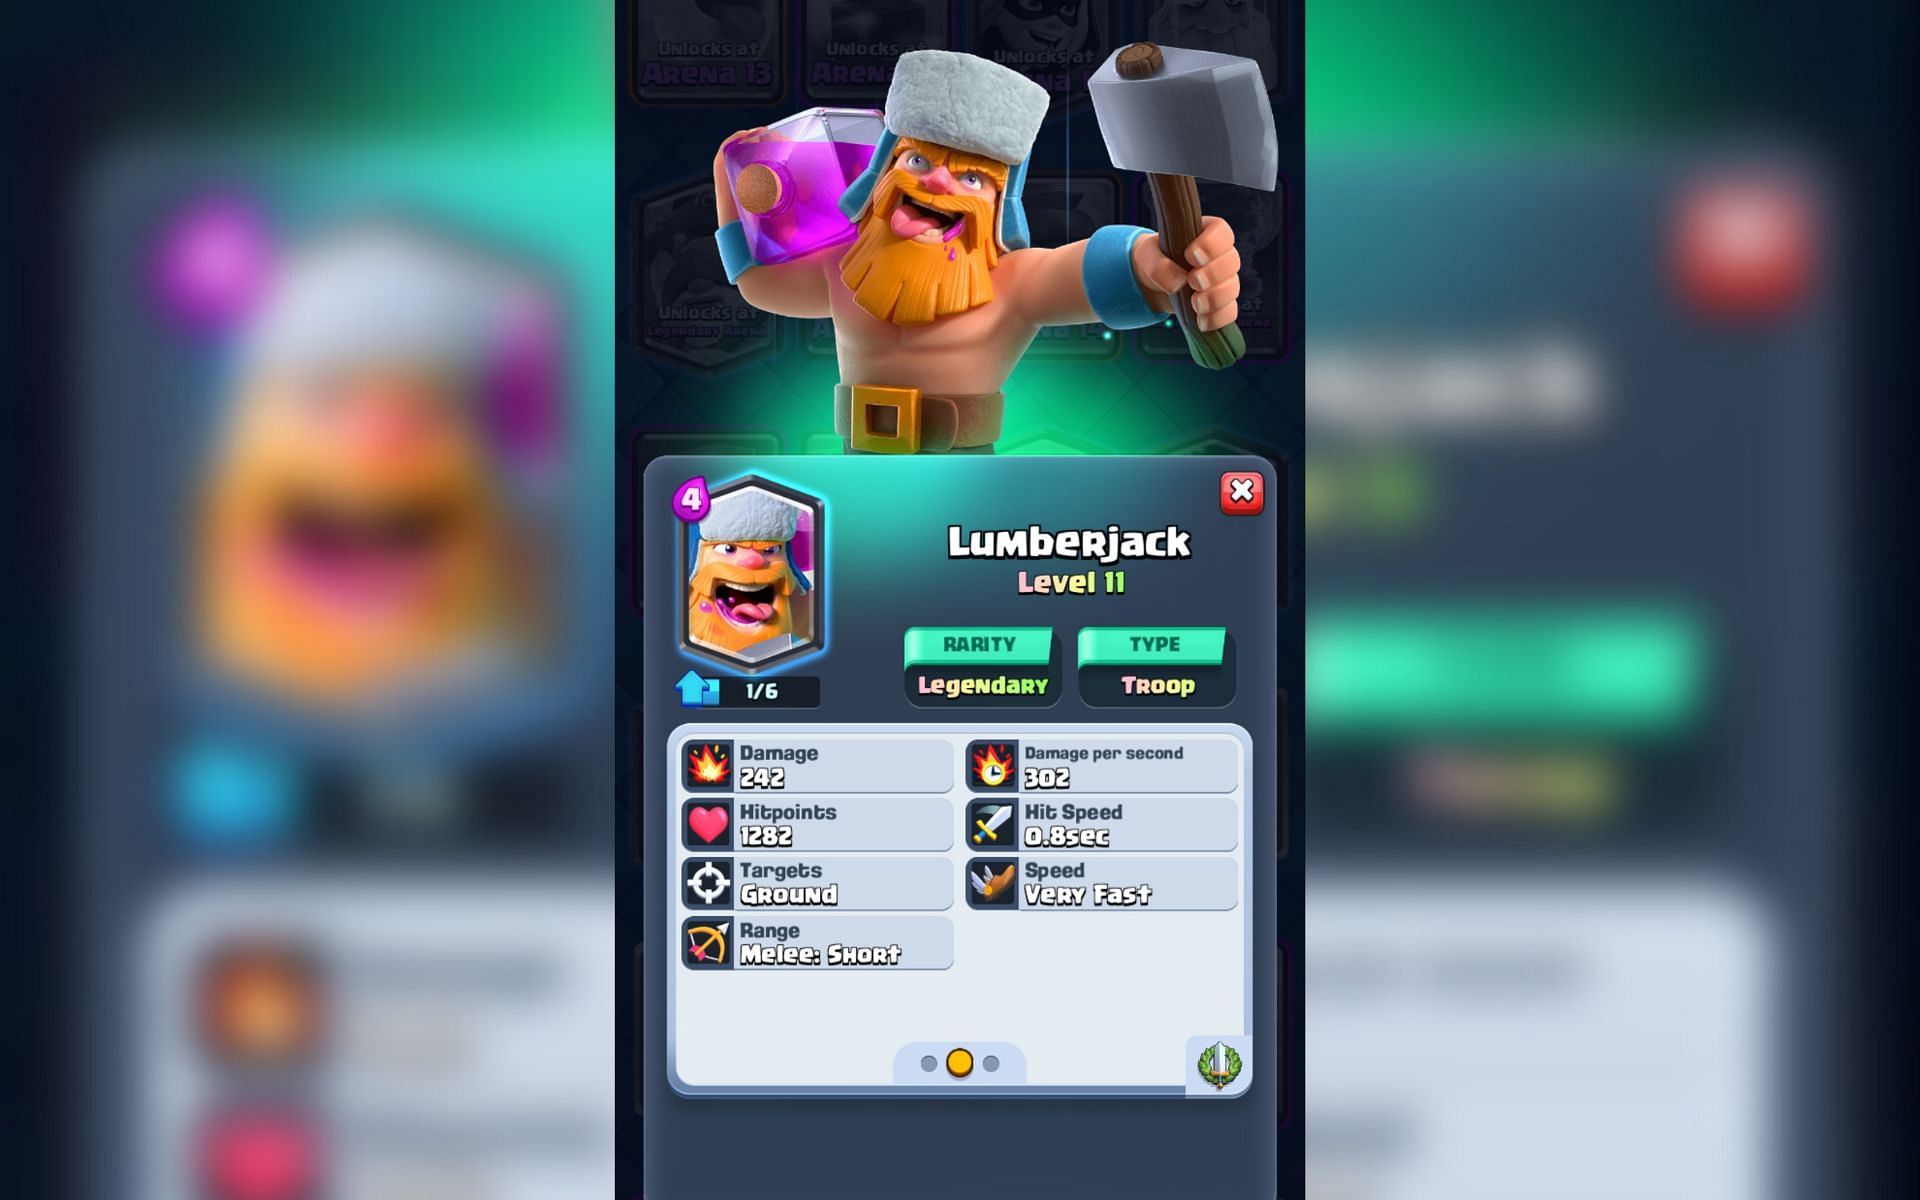 Lumberjack in Clash Royale (Image via Sportskeeda)